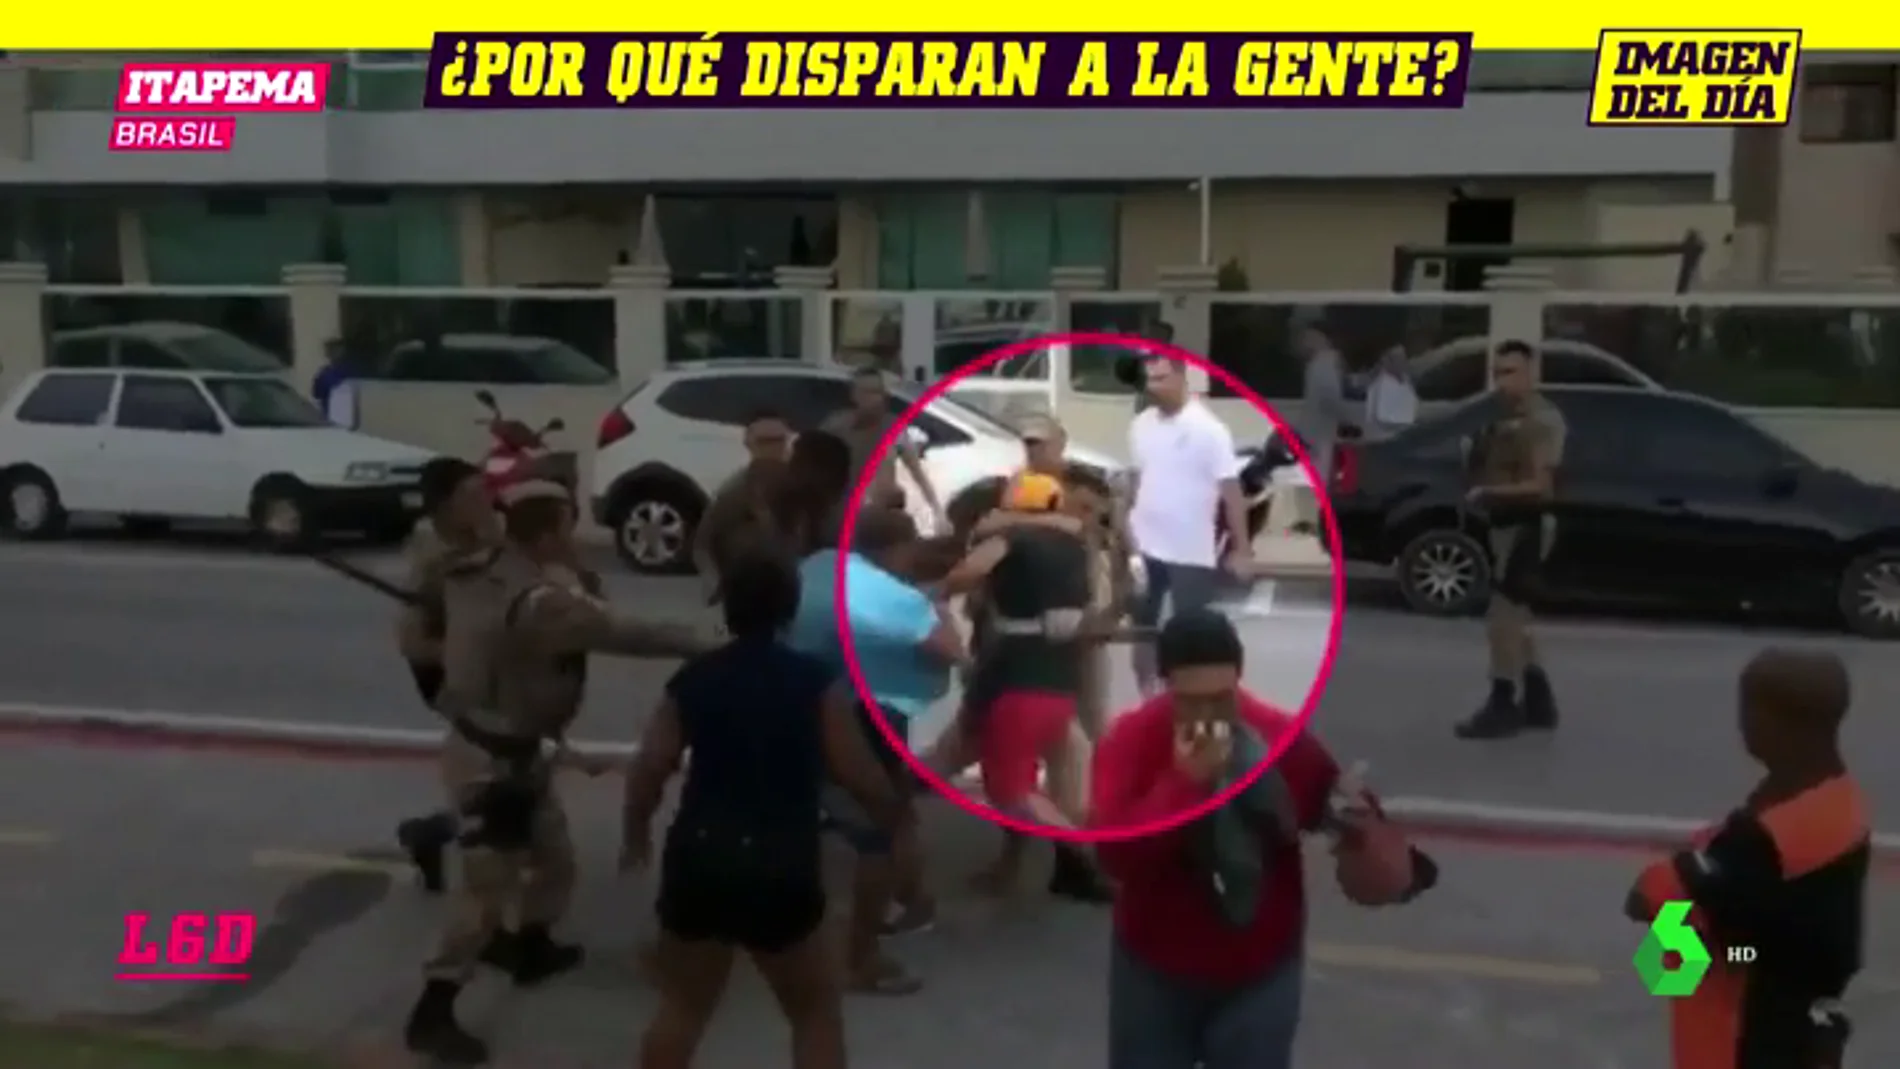 Disparos a quemarropa, gas pimienta, porrazos... Polémica en Brasil tras la actuación policial tras un partido de fútbol playa